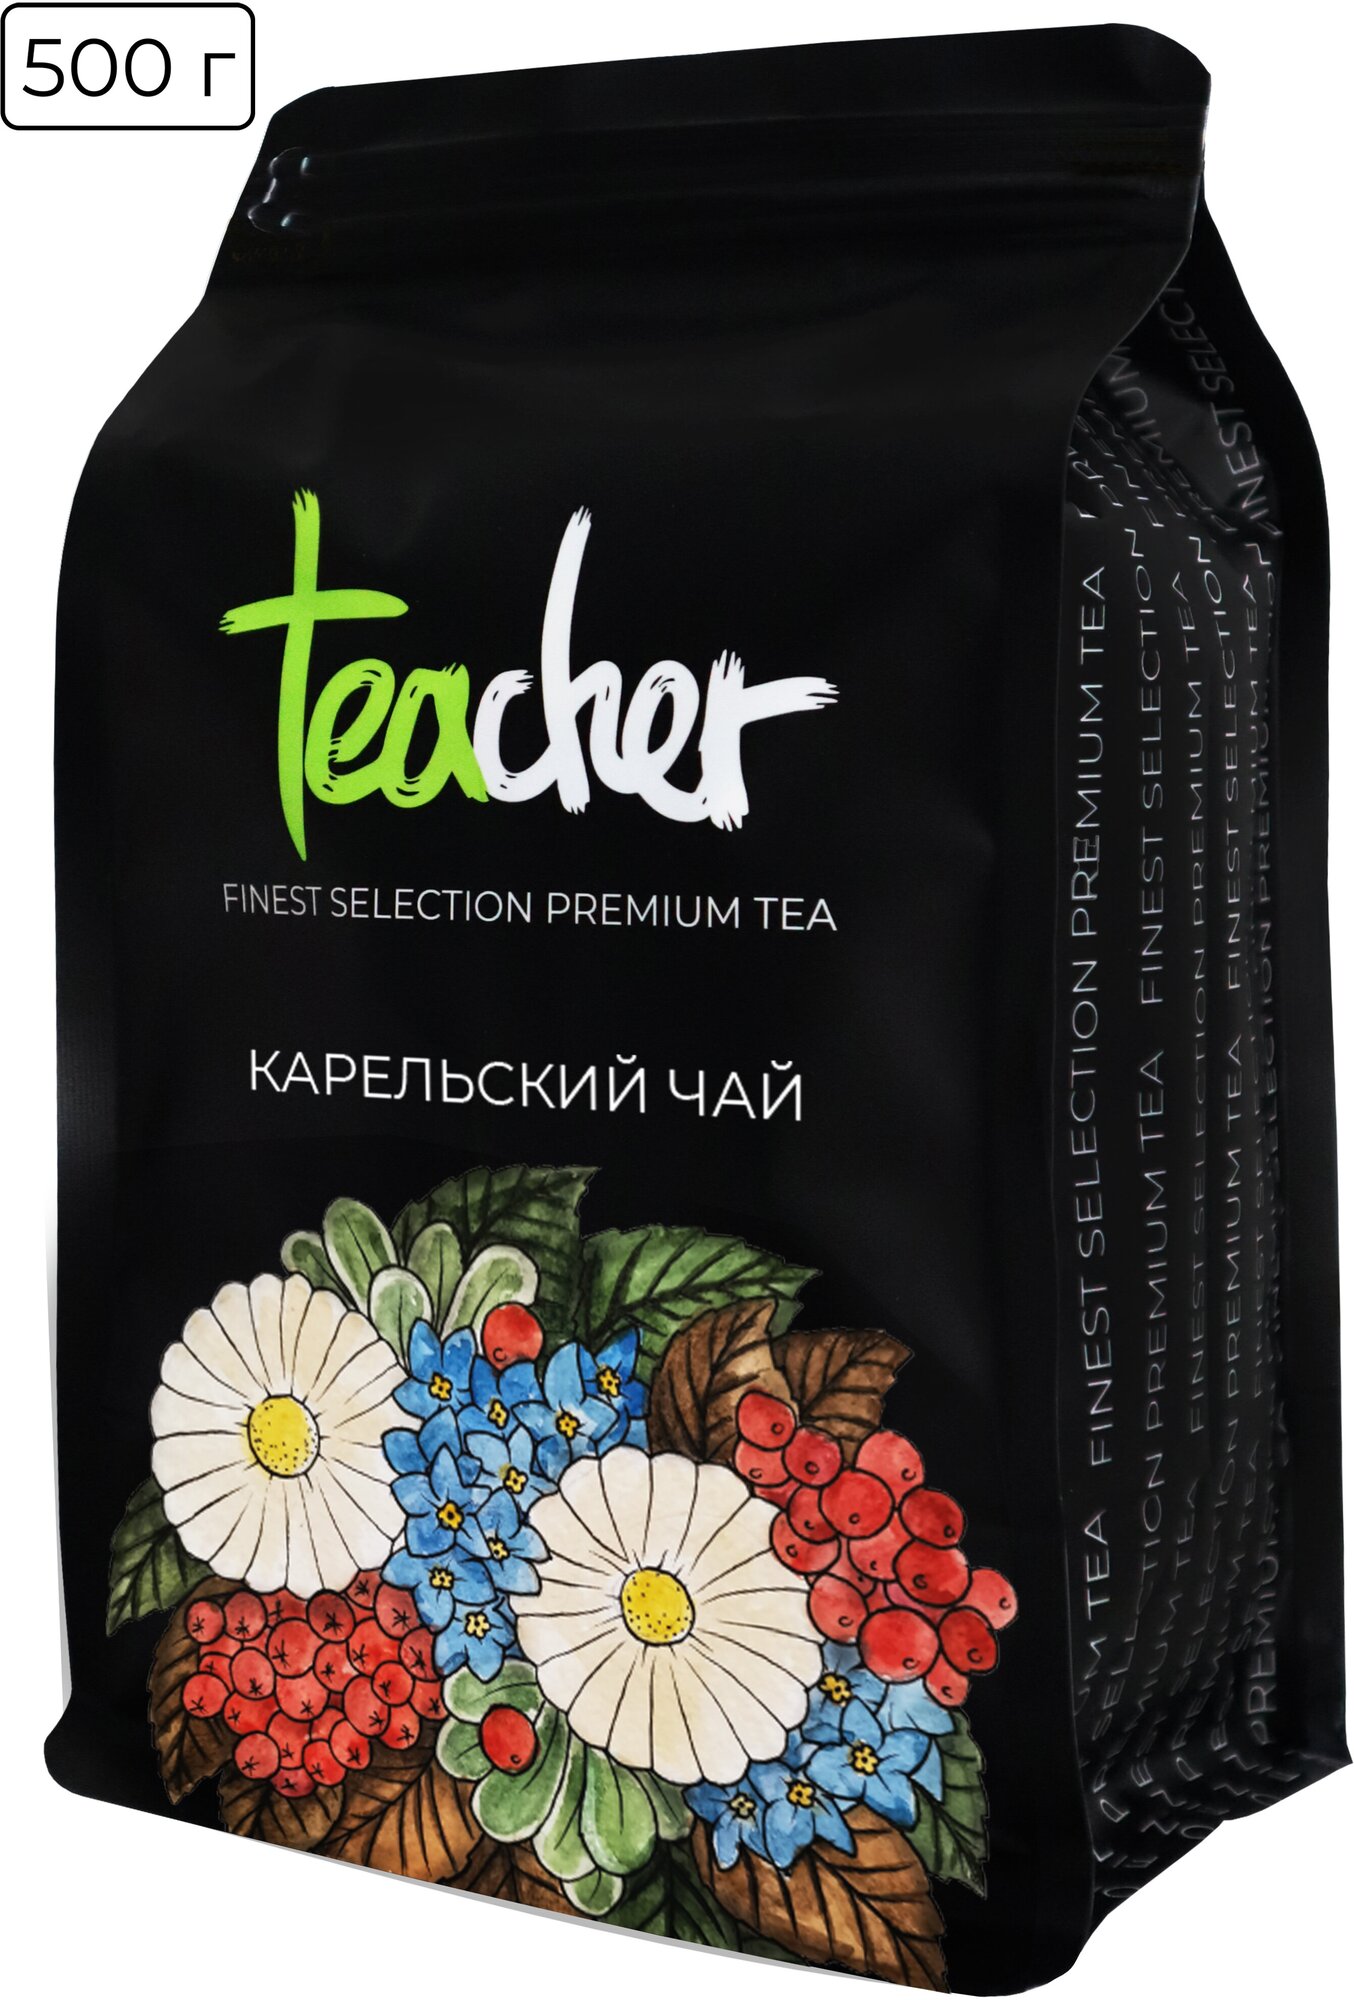 Чай TEACHER Карельский 500 г черный листовой зеленый травяной ягодный фруктовый премиум рассыпной весовой - фотография № 5